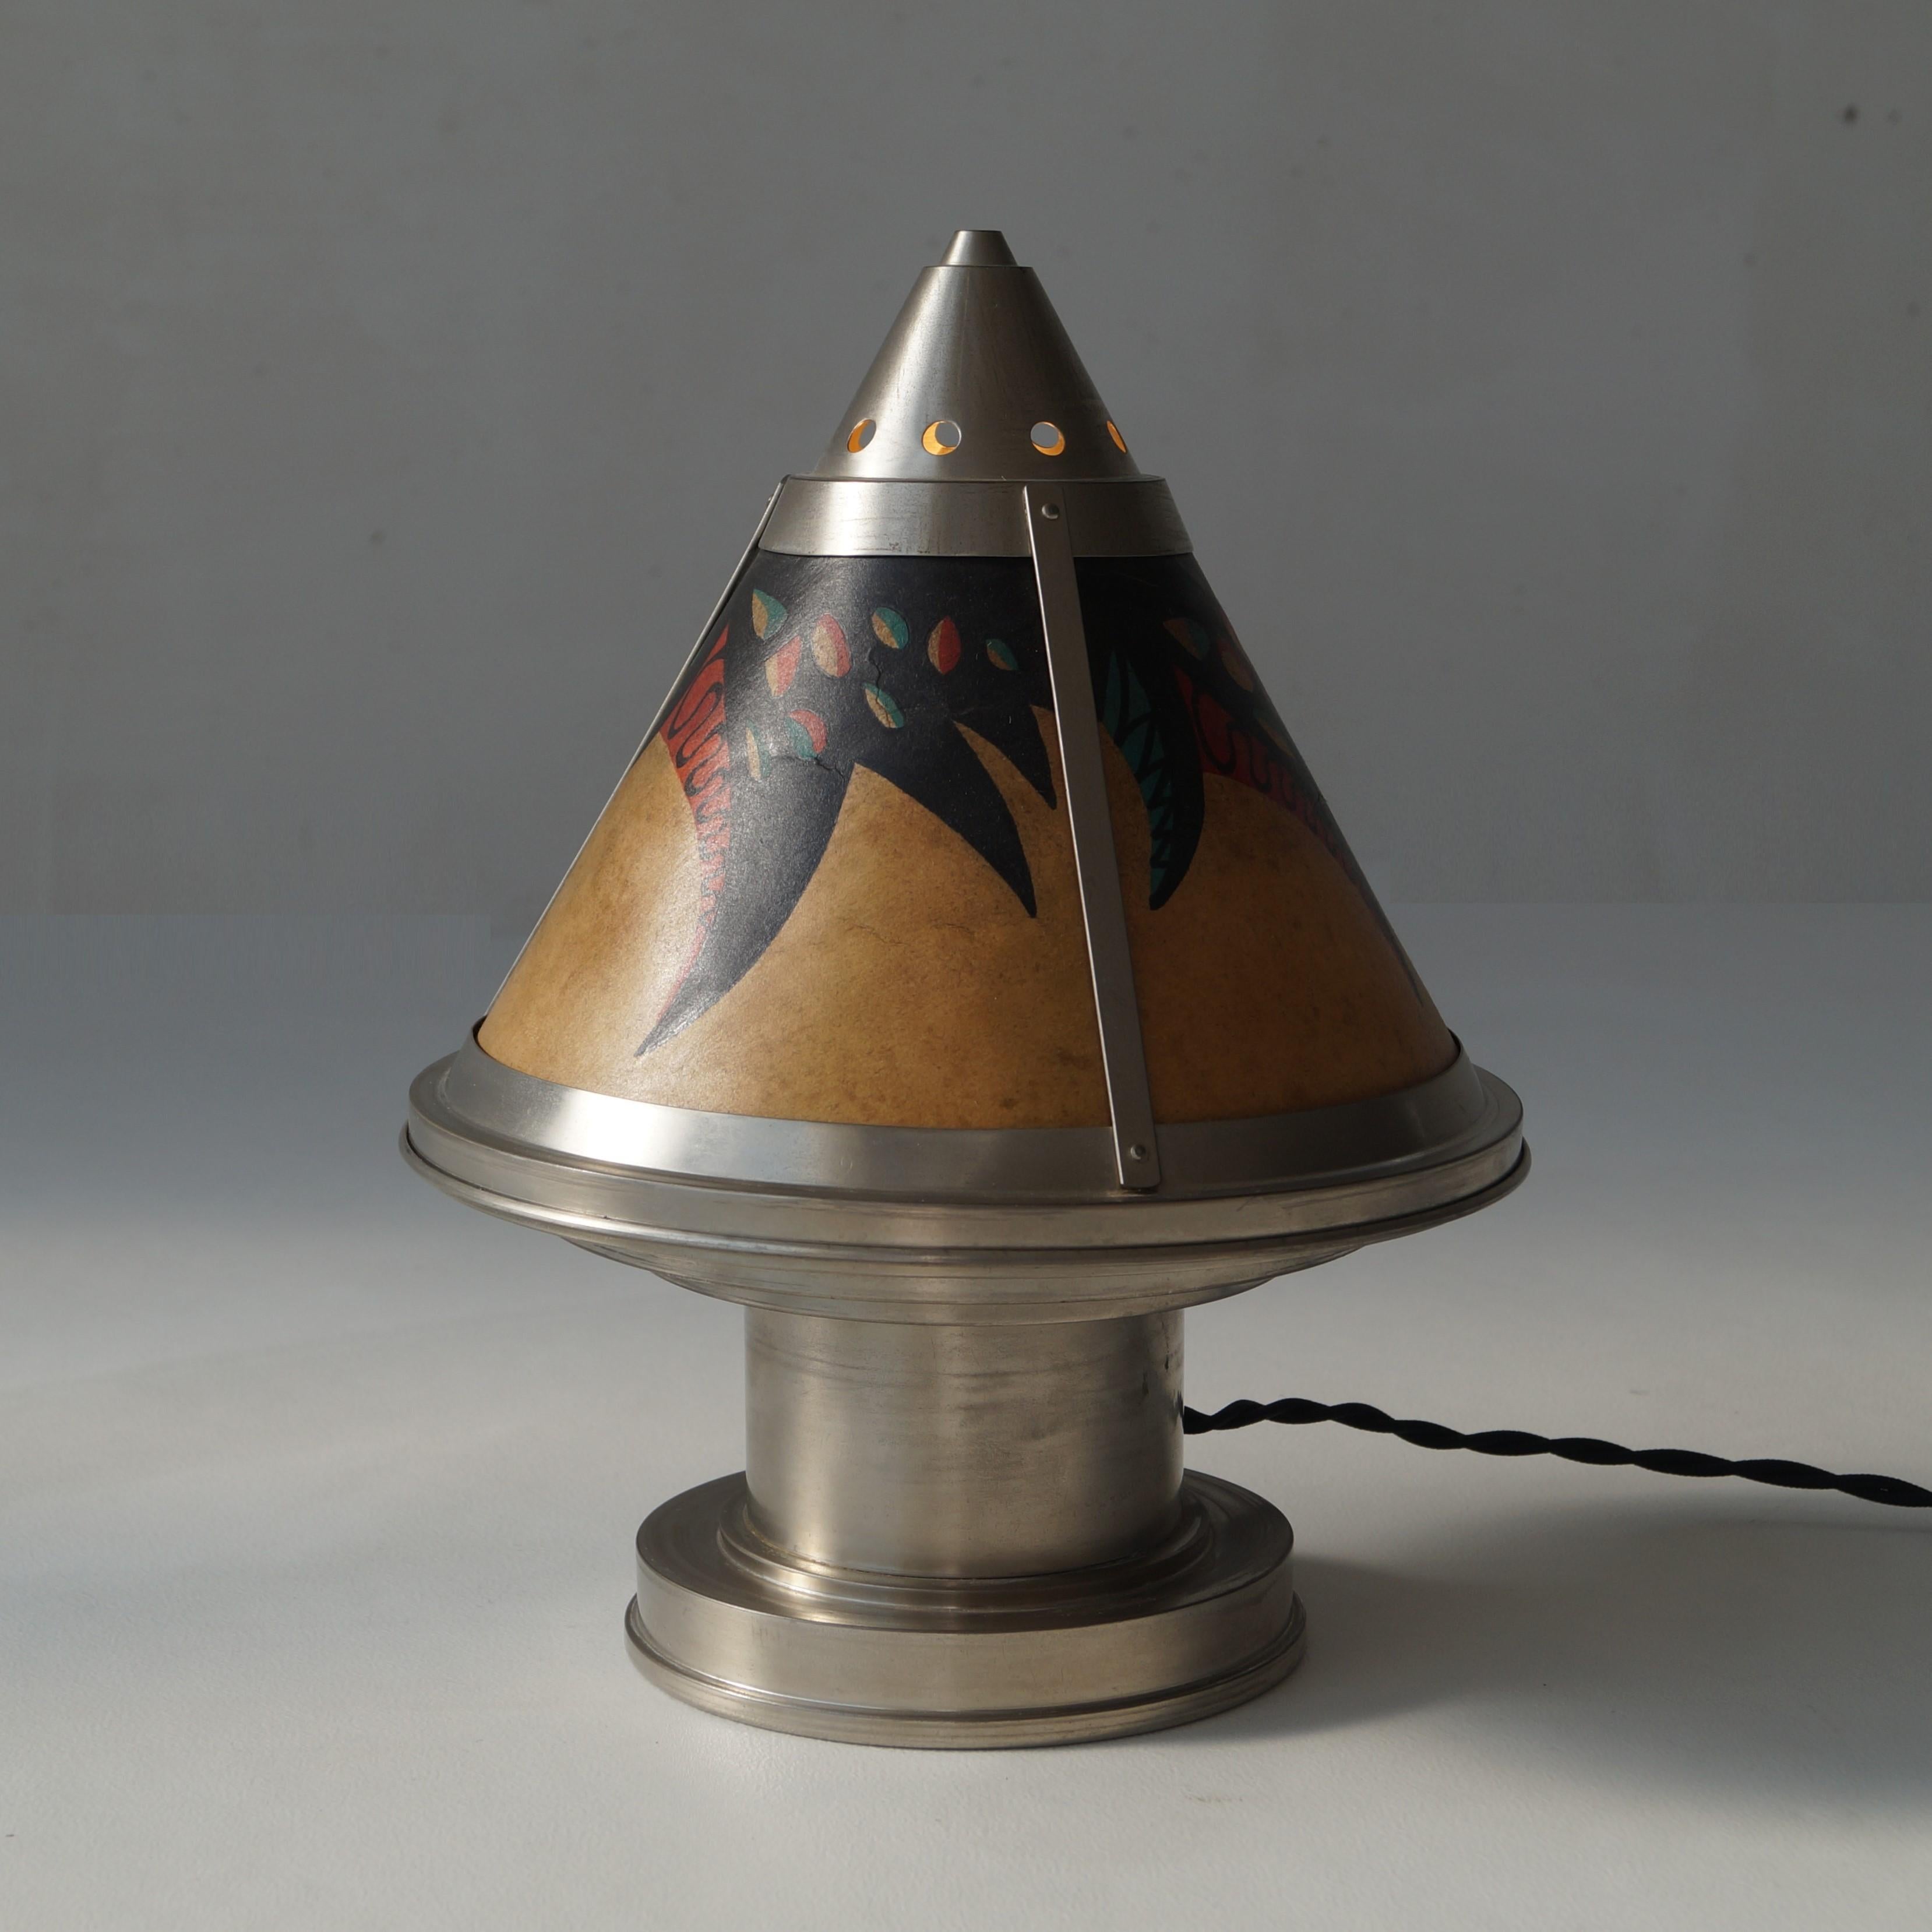 Seltene holländische Art-Déco-Tischlampe oder Nachttischlampe des niederländischen Herstellers Daalderop, um 1925. Das Stück ist in einem für sein Alter sehr guten Zustand. Diese Lampen wurden aus Messing und Nickelblech hergestellt. Dies ist die